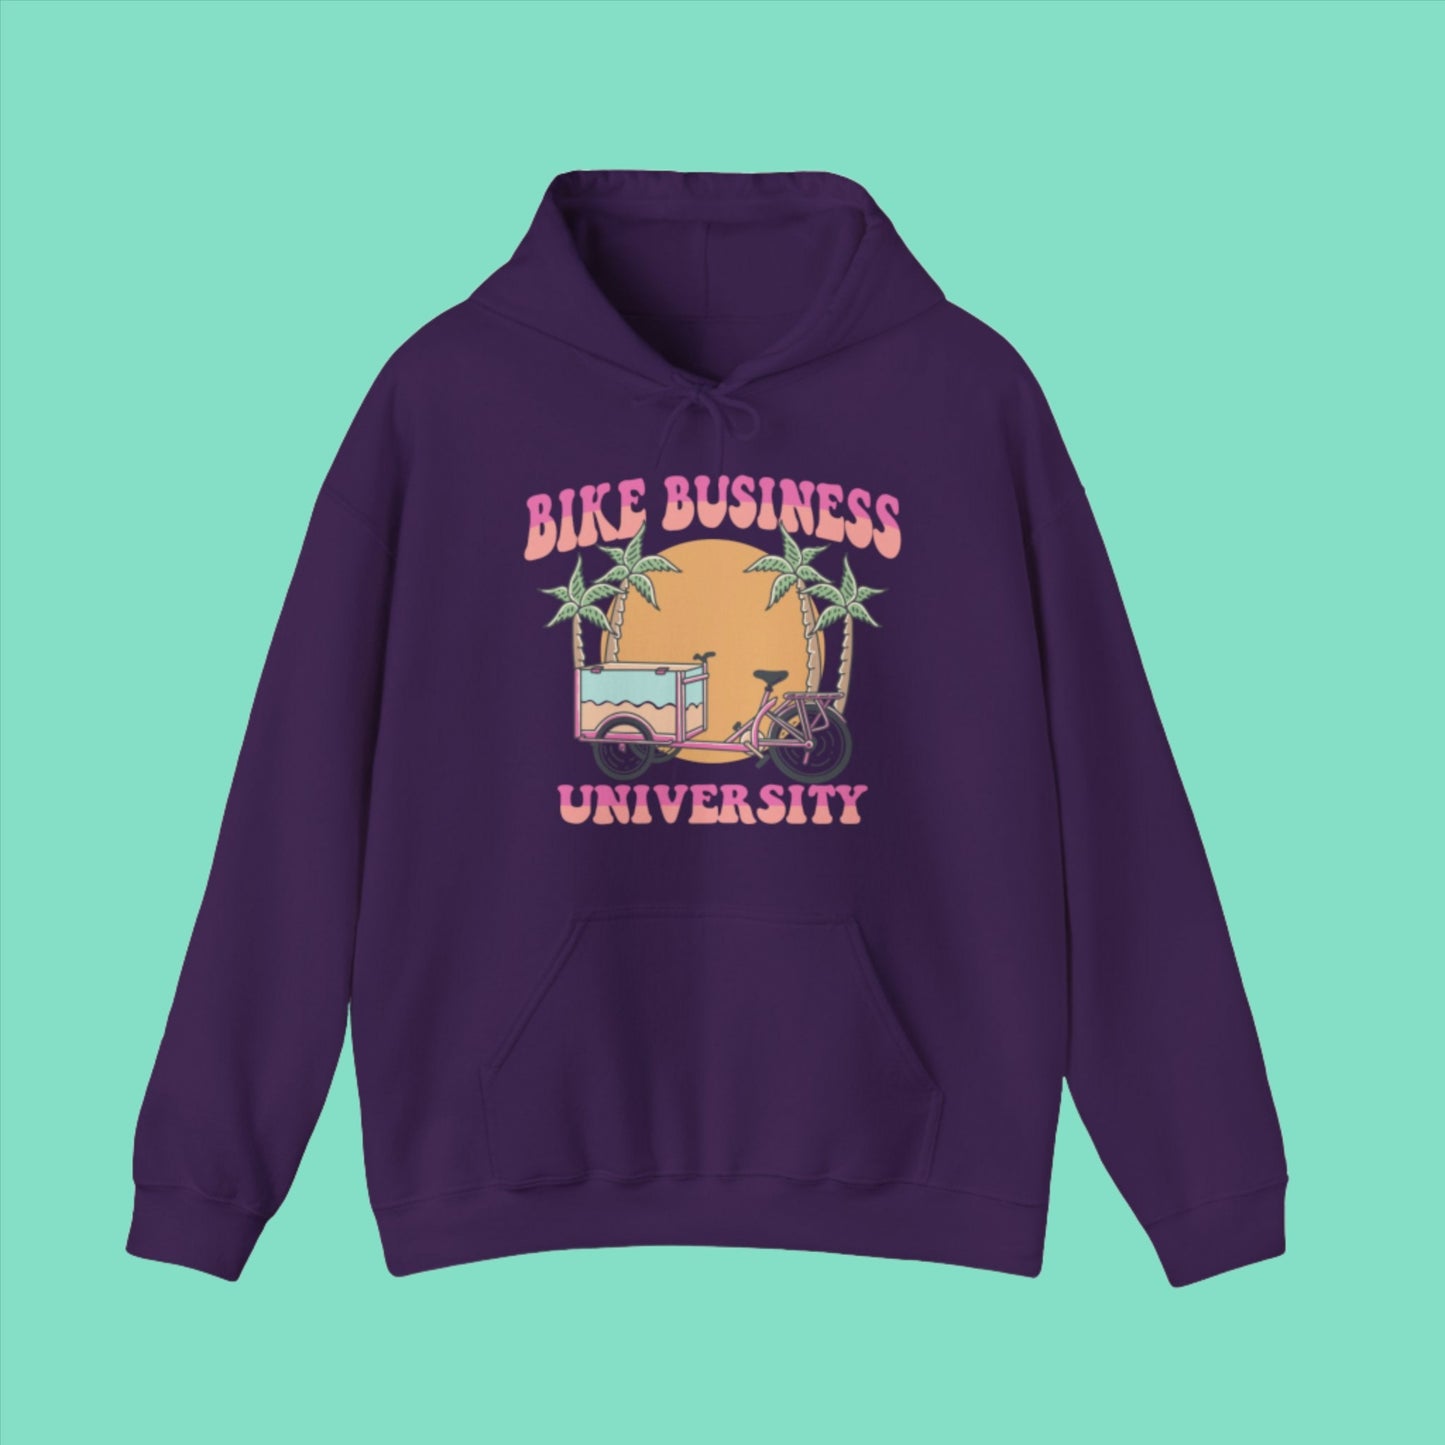 Bike Business University Hooded Sweatshirt